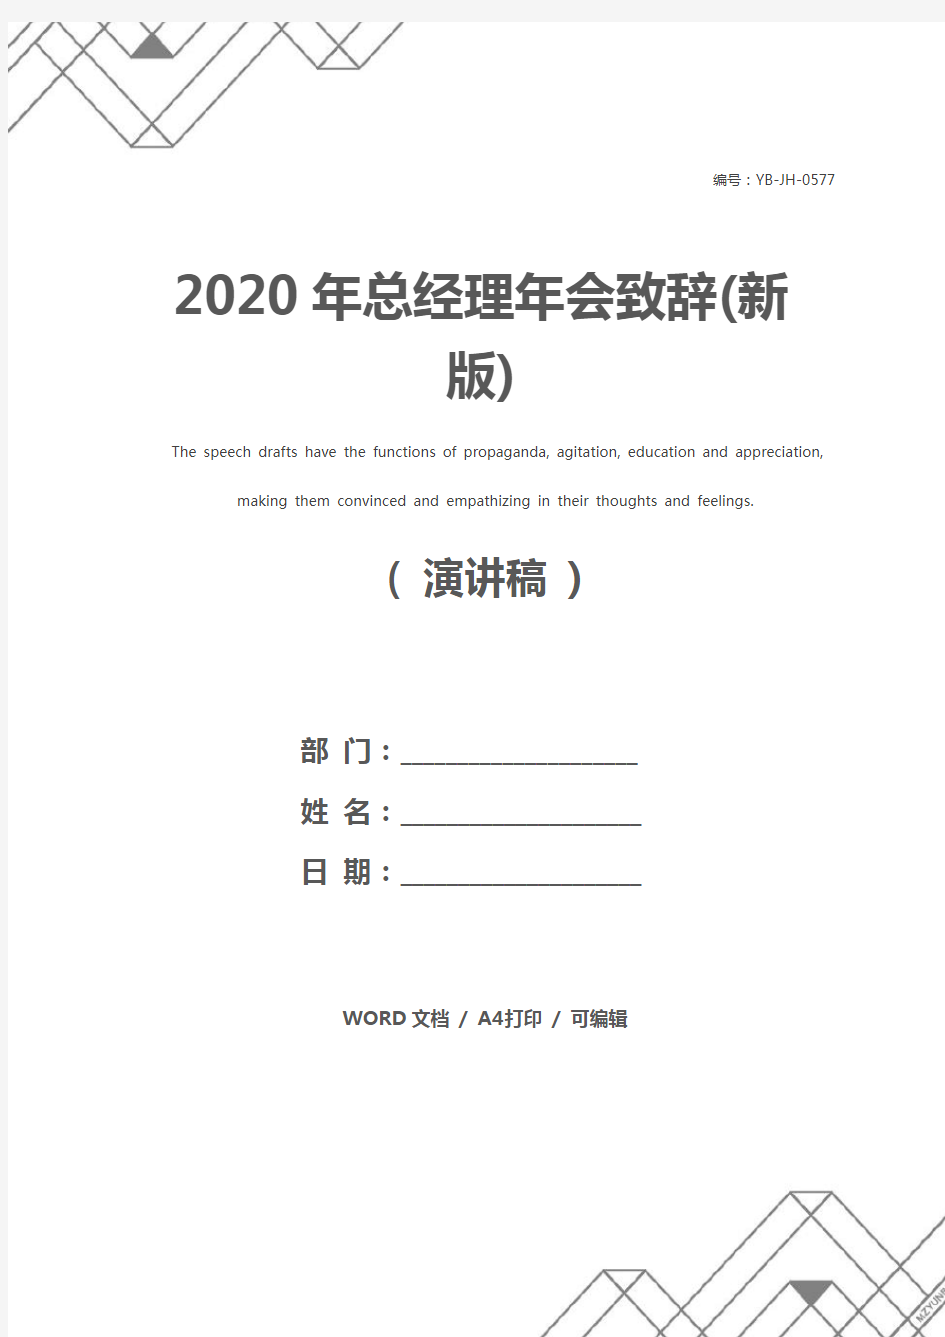 2020年总经理年会致辞(新版)